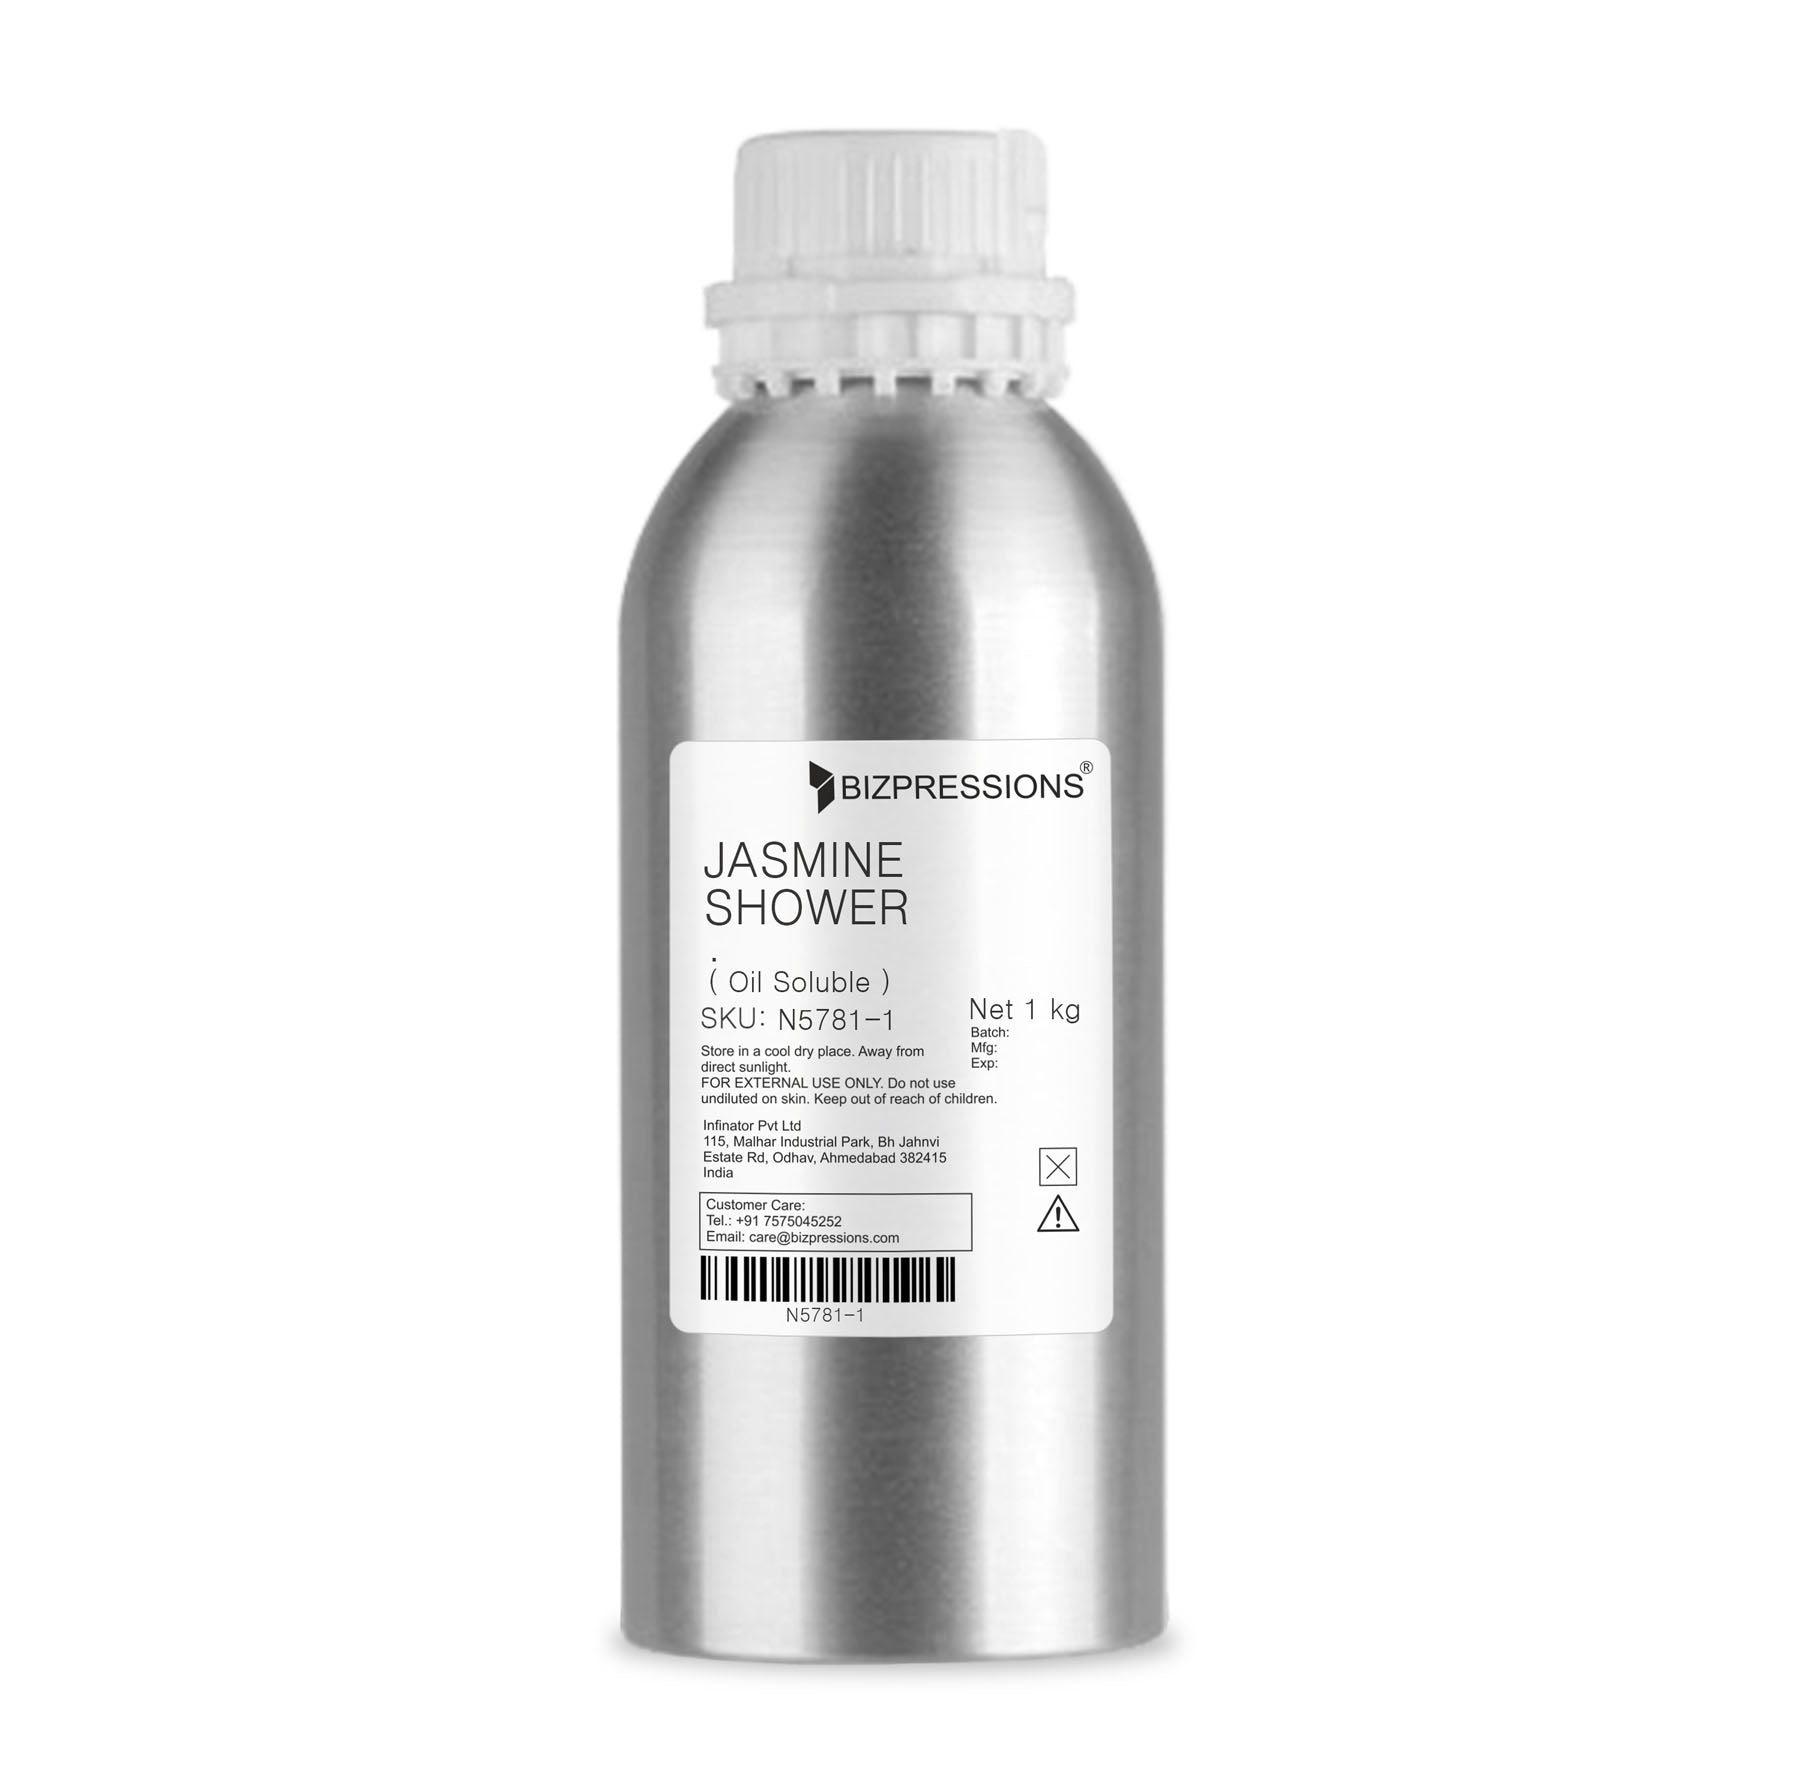 JASMINE SHOWER - Fragrance ( Oil Soluble ) - 1 kg